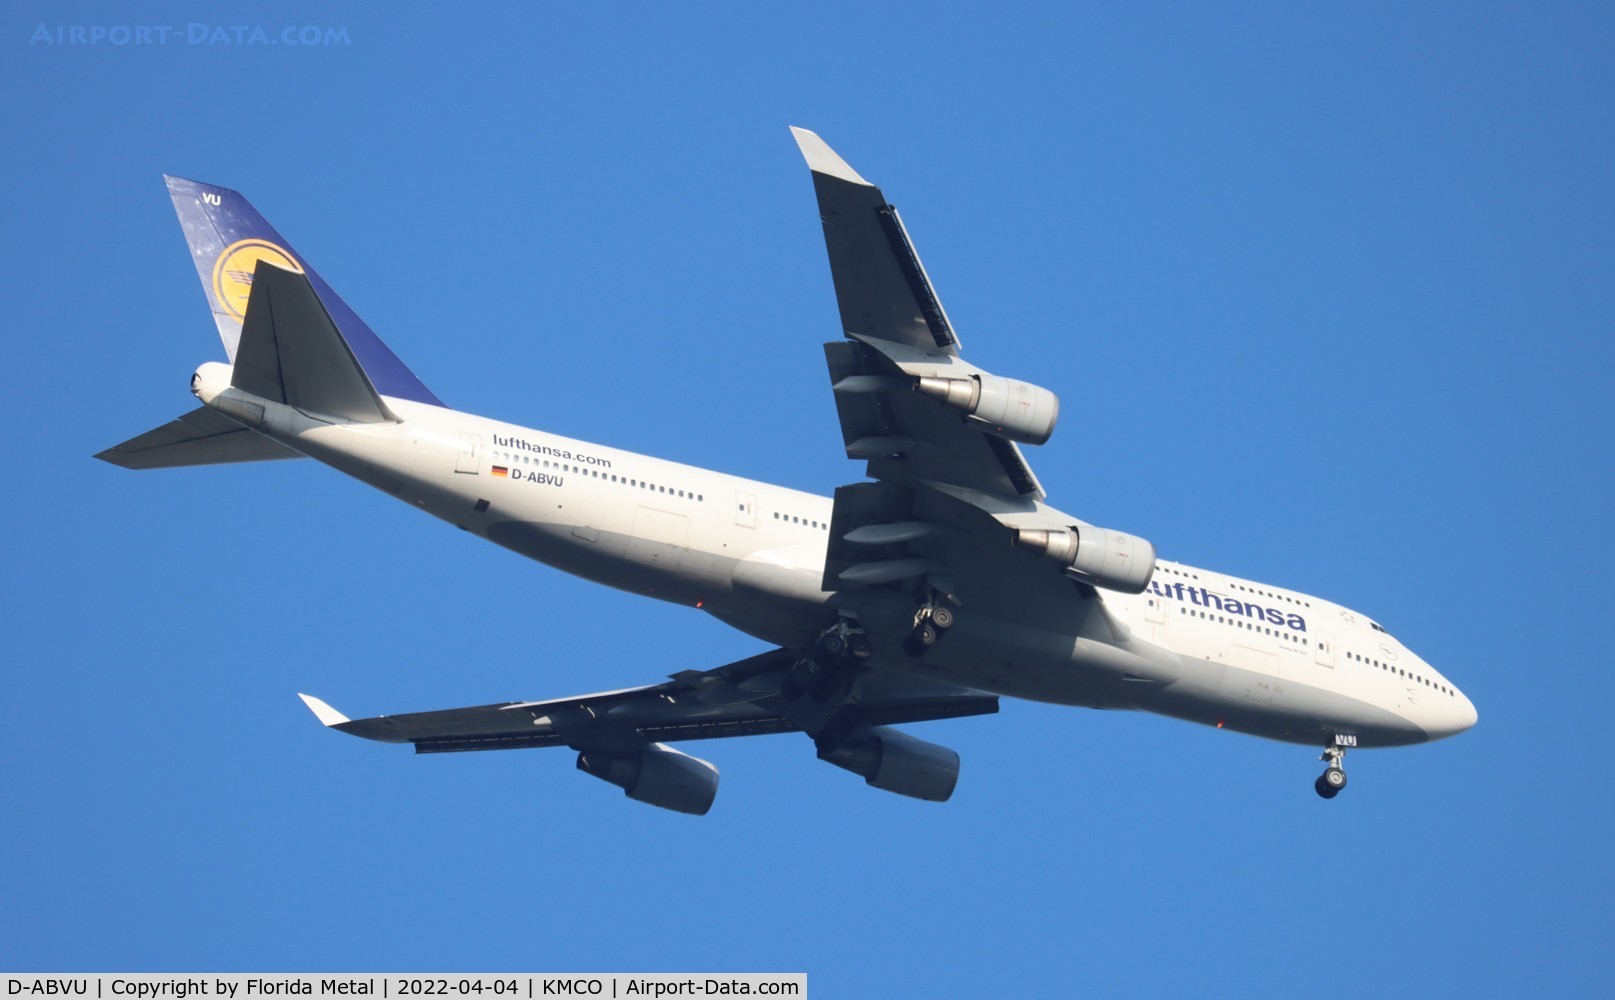 D-ABVU, 1998 Boeing 747-430 C/N 29492, Lufthansa 747-400 zx